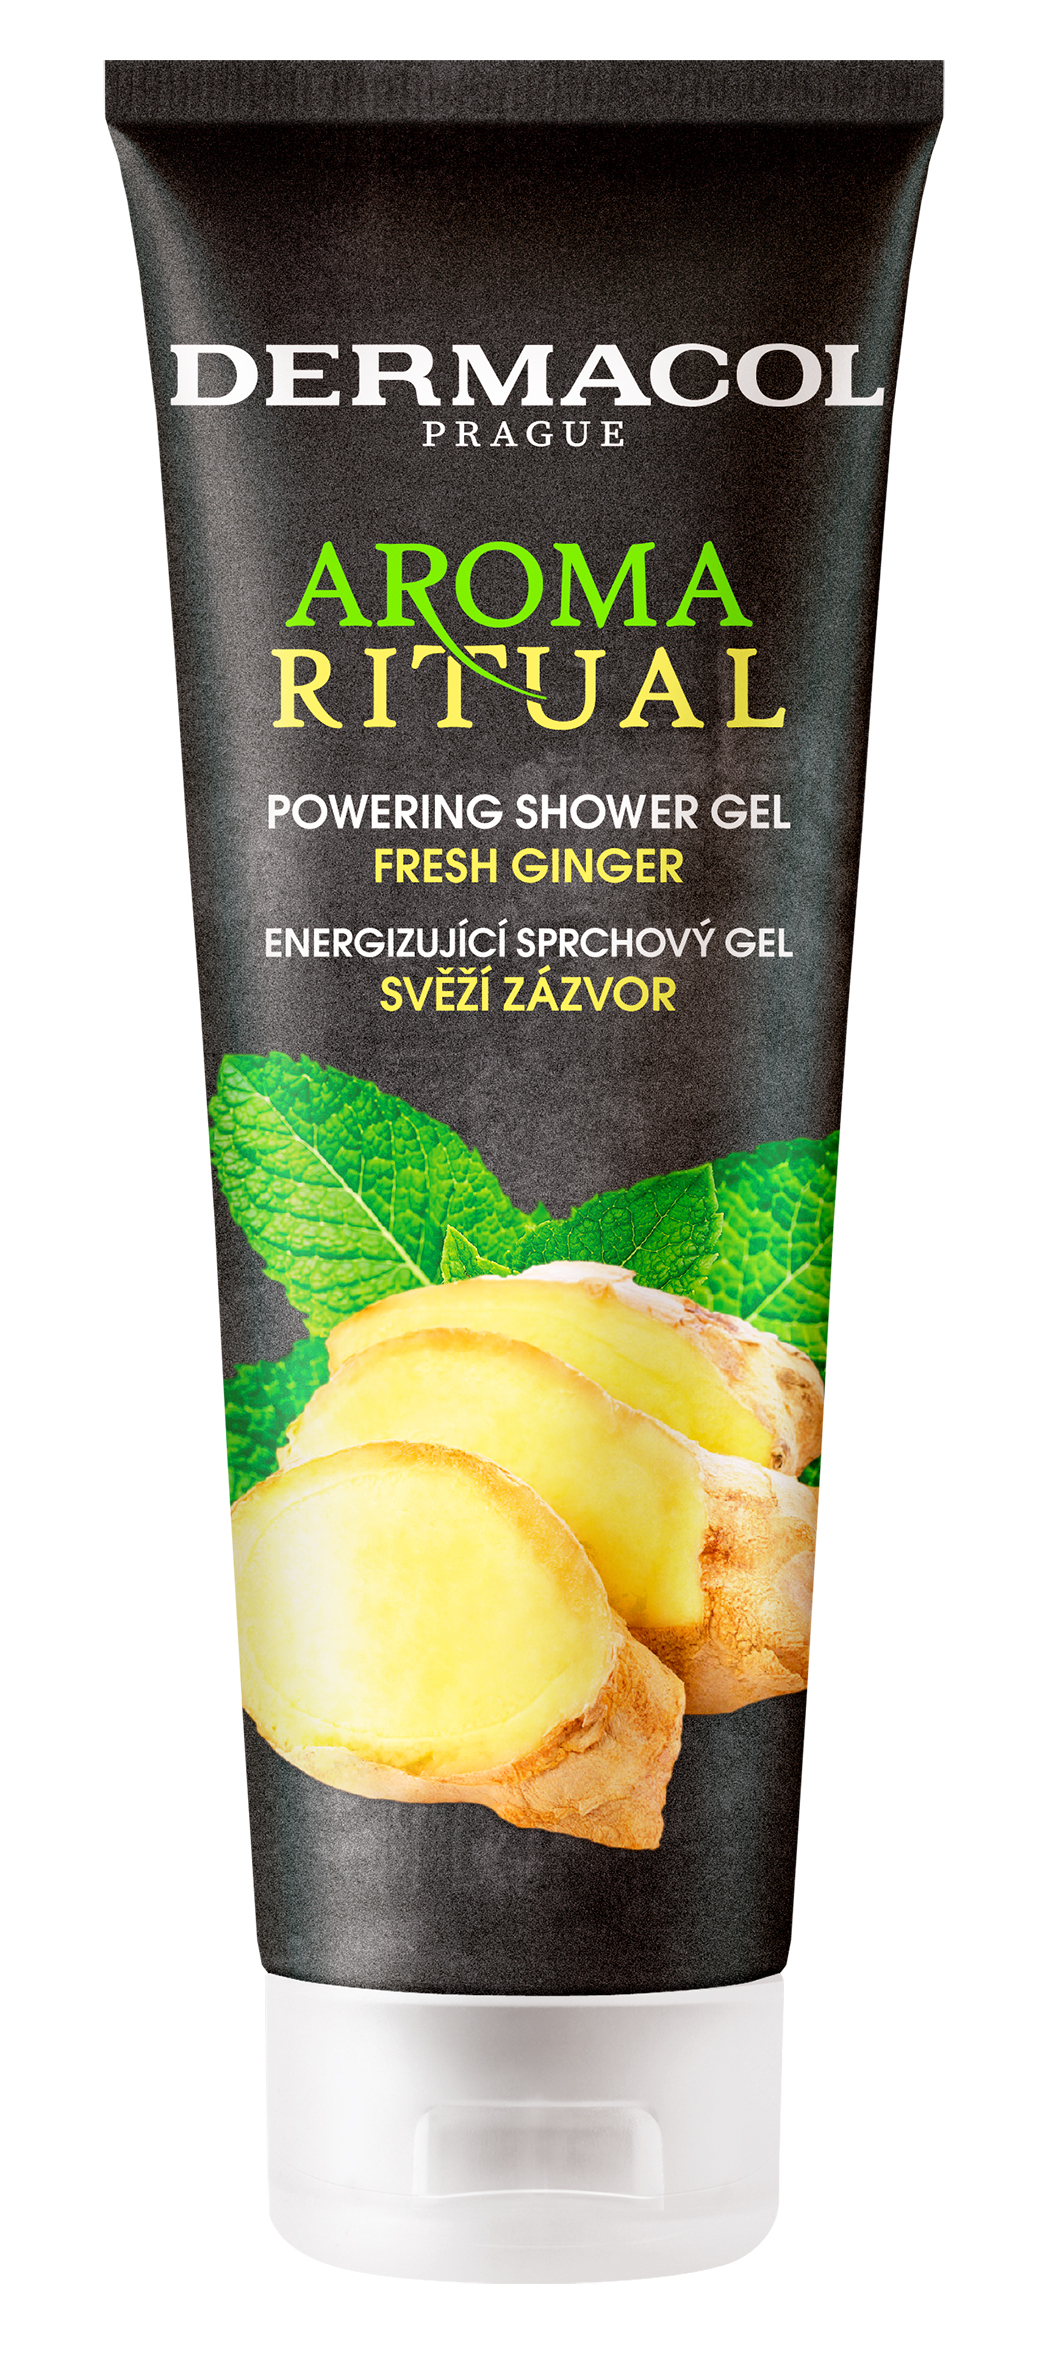 Dermacol Sprchový gel Svěží zázvor Aroma Ritual (Powering Shower Gel) 250 ml